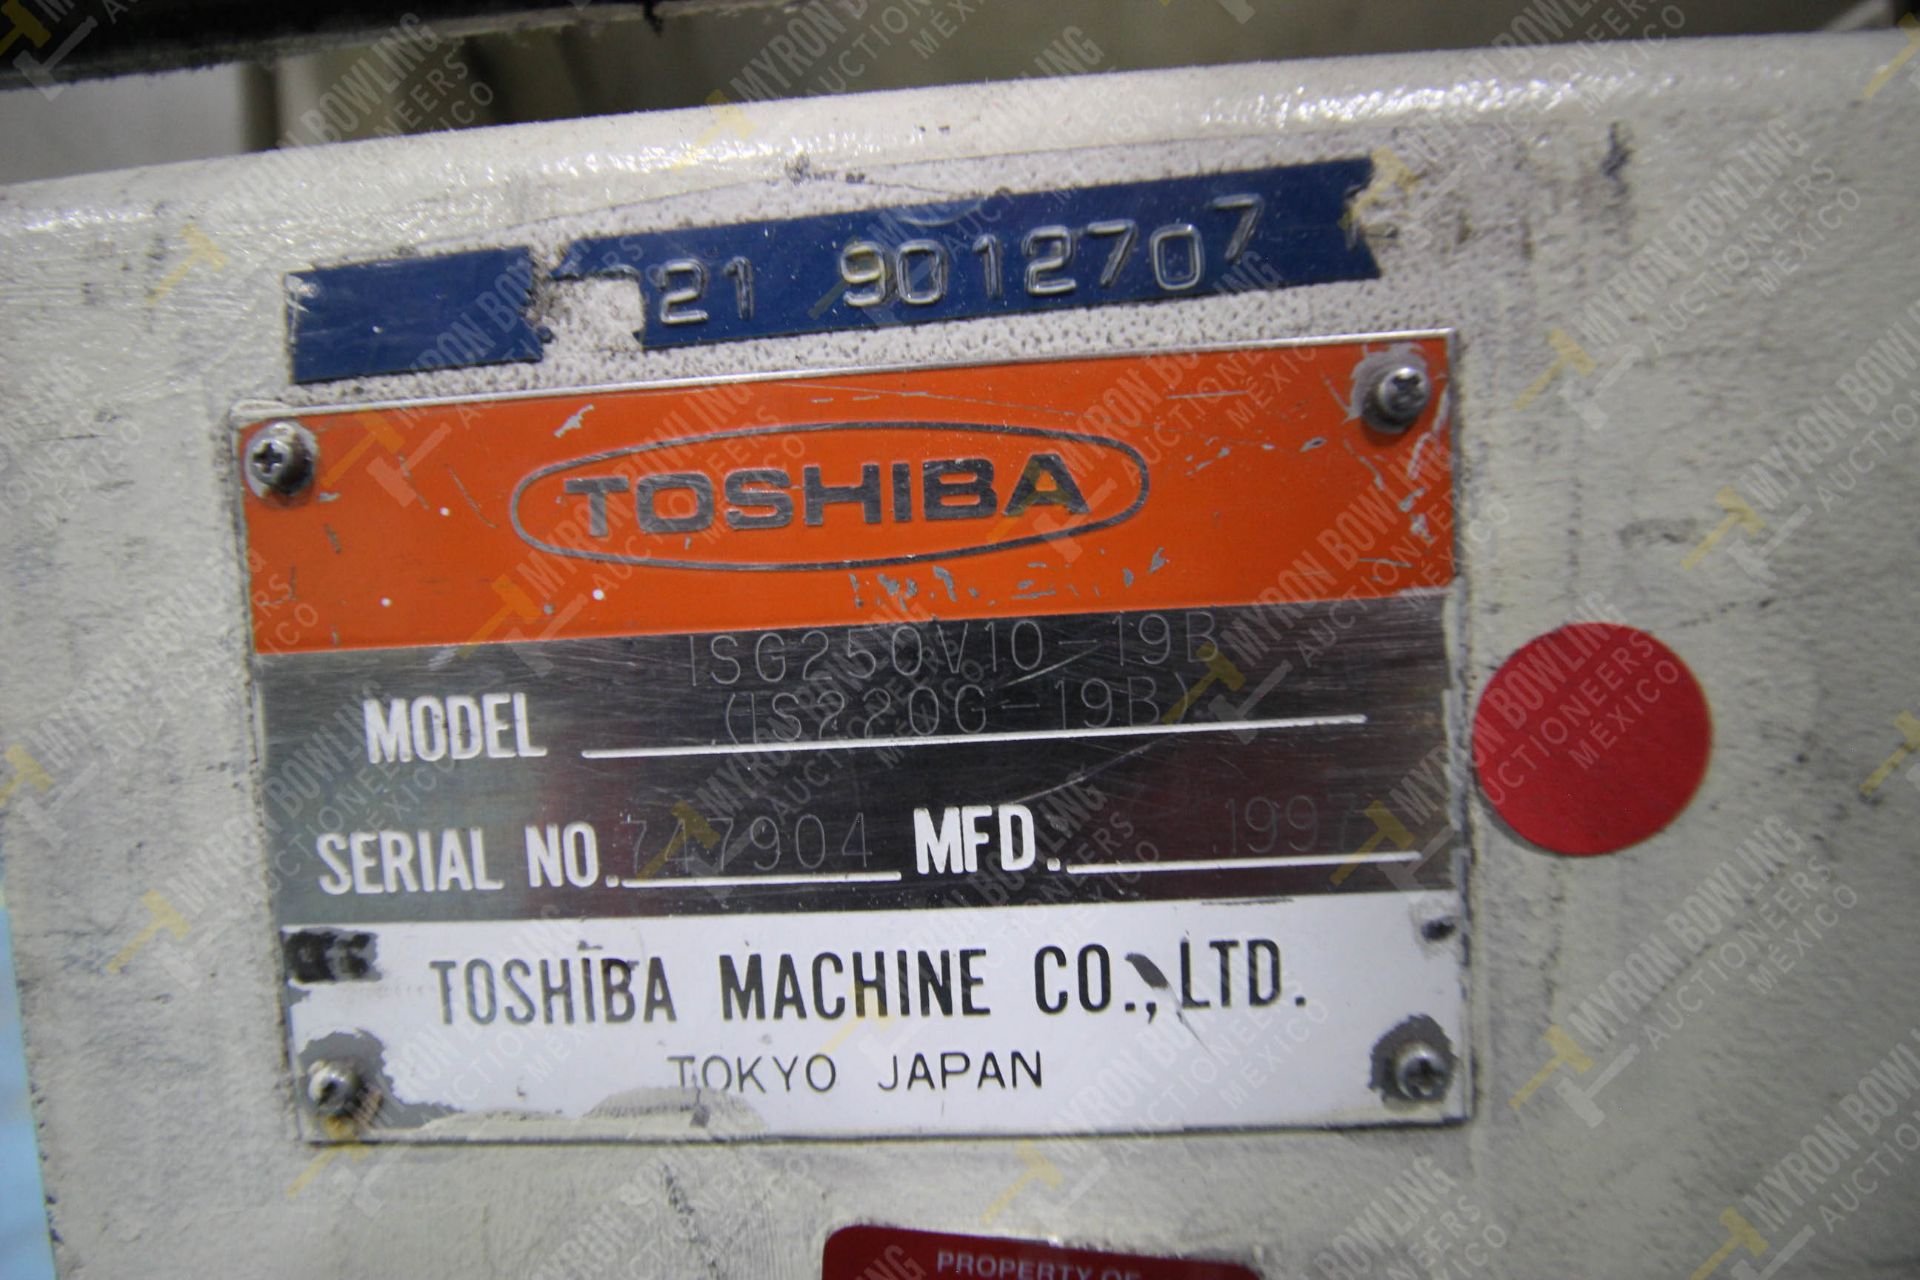 INYECTORA DE PLASTICO, MARCA TOSHIBA ISG 250, NO. SERIE 747904, NO. ACTIVO D-11, AÑO 1997, MODELO I - Image 16 of 16